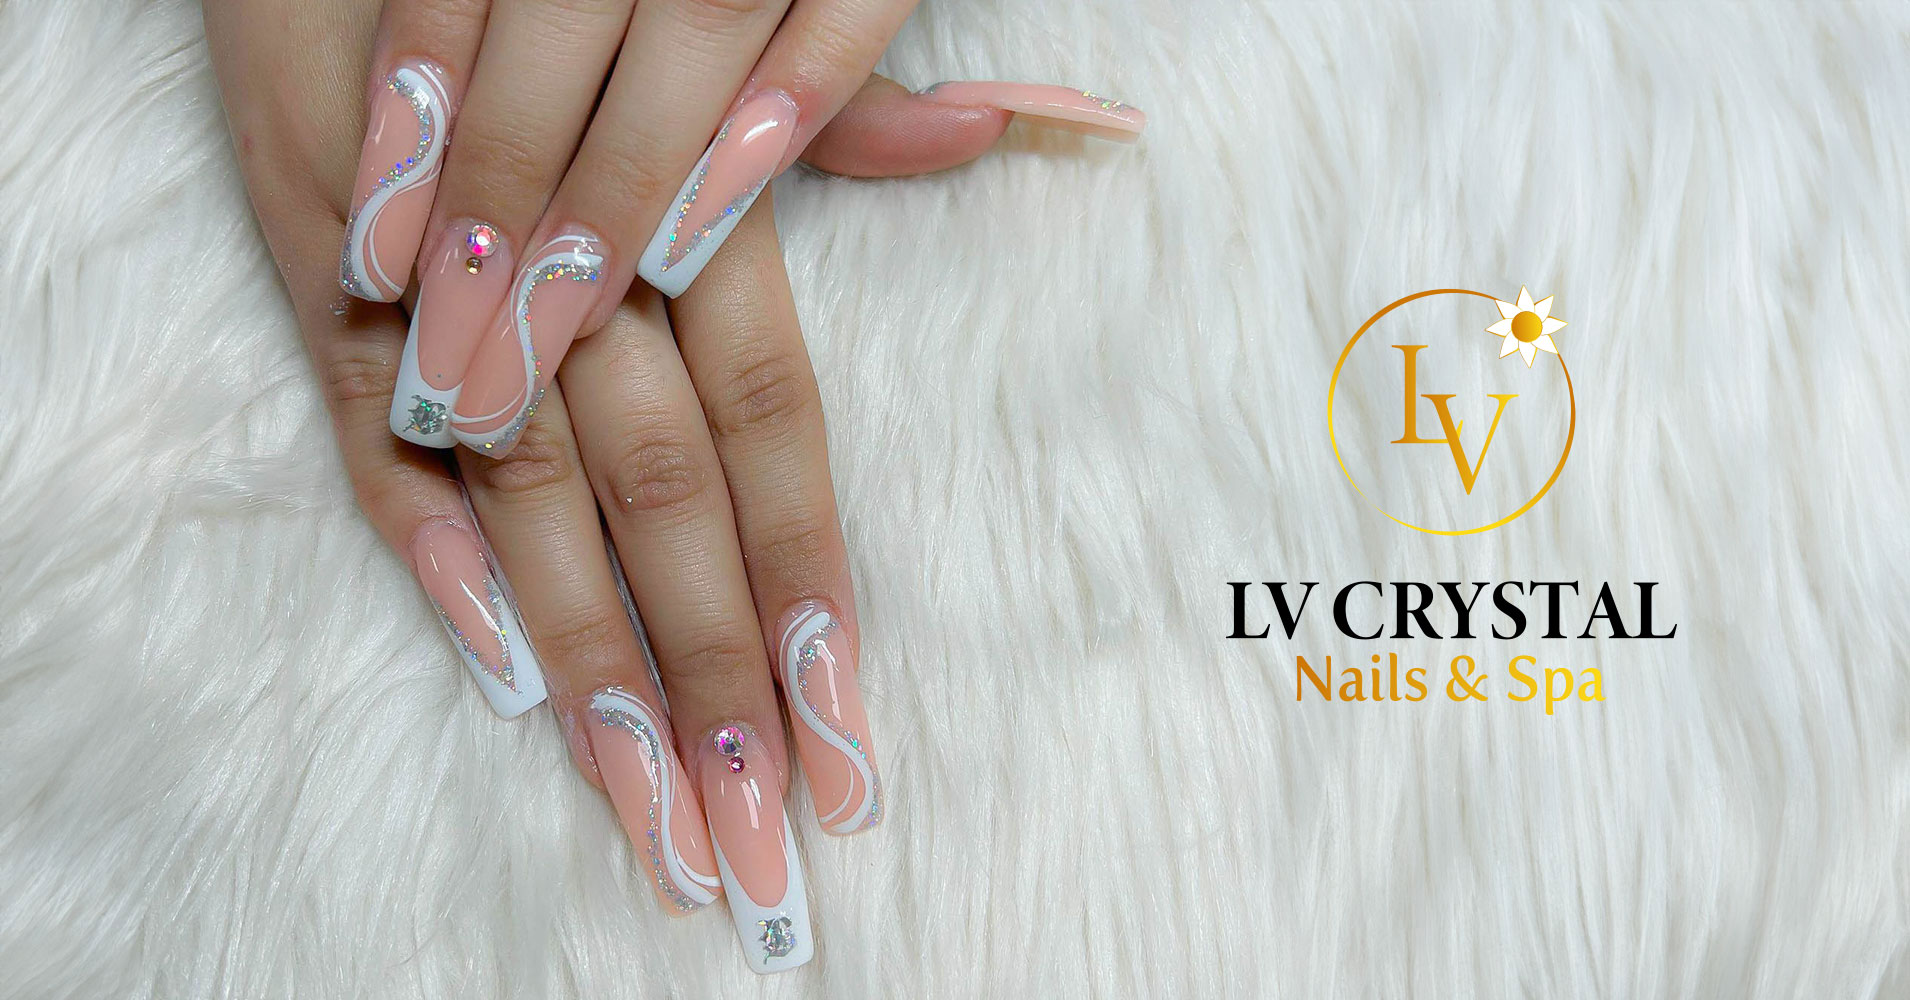 lv crystal nails spa thumbnails